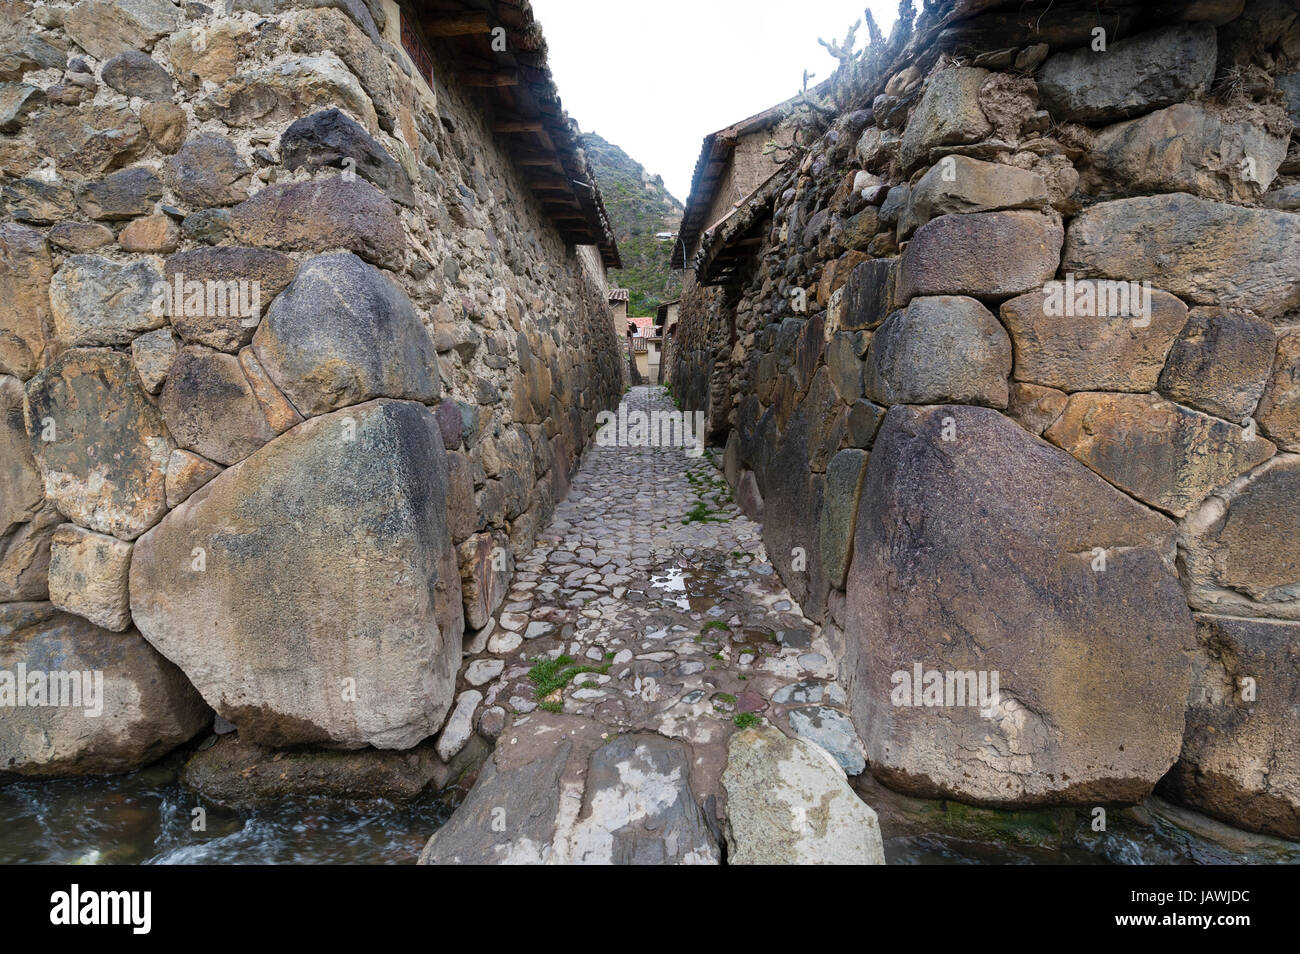 Un canale di irrigazione in un villaggio lane pavimentata con pietre e foderato con alta Inca muretti a secco. Foto Stock